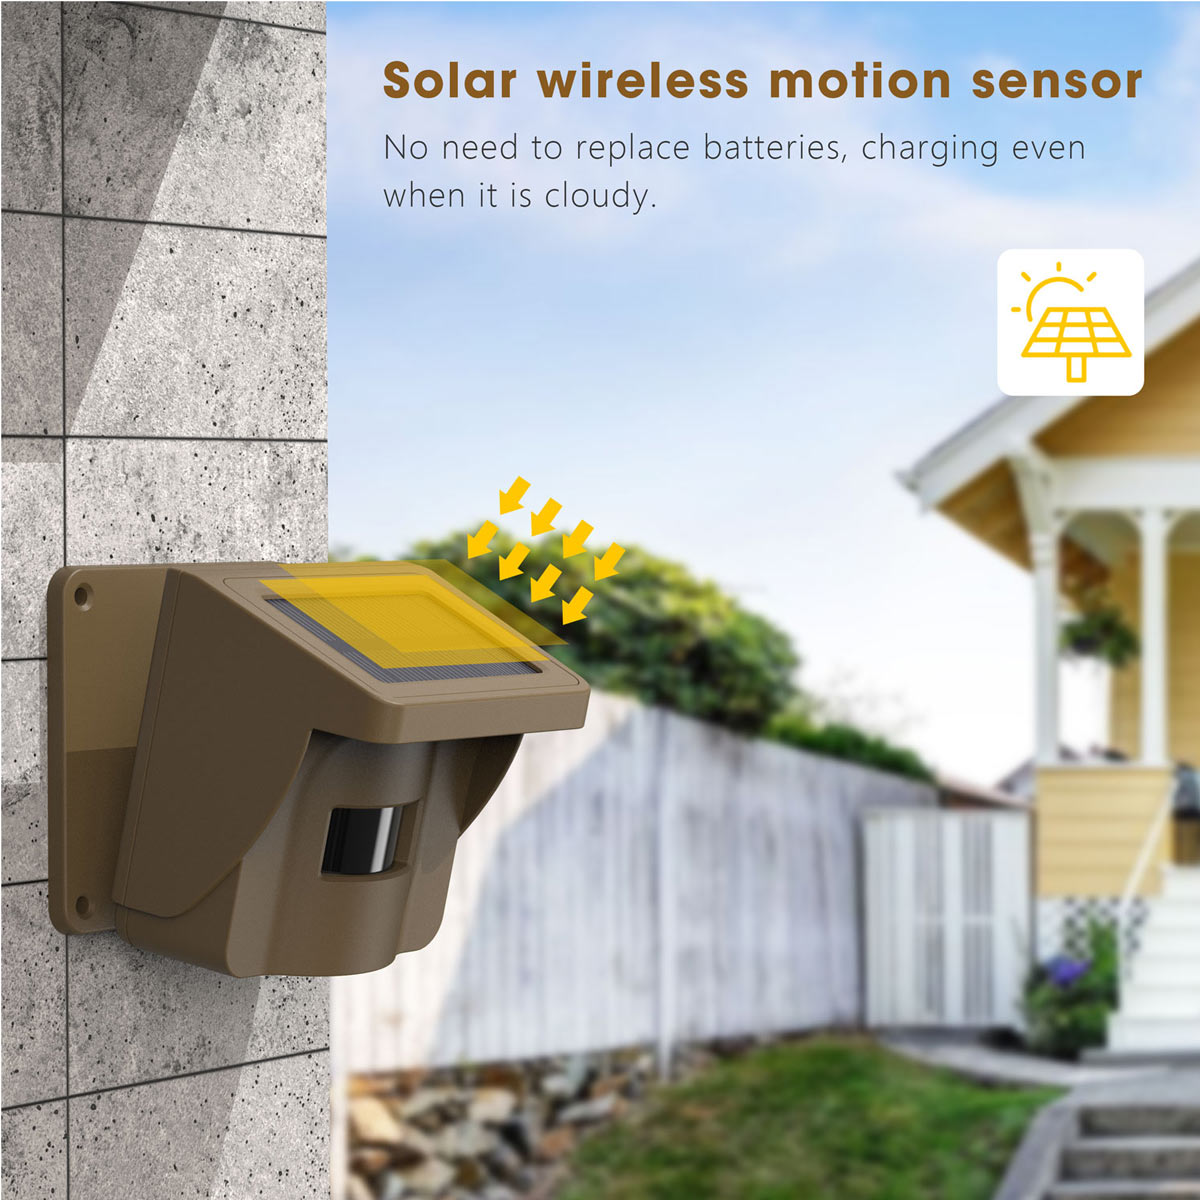 TOGUARD Einfahrtsalarm - 1/2 Meile Long Range Solar Wireless PIR Motion Sensor & Detektor mit 30 Fuß Erfassungsbereich, IP66 Wasserdichtes Outdoor-Sicherheitswarnsystem Passend für Monitor & Protect Property